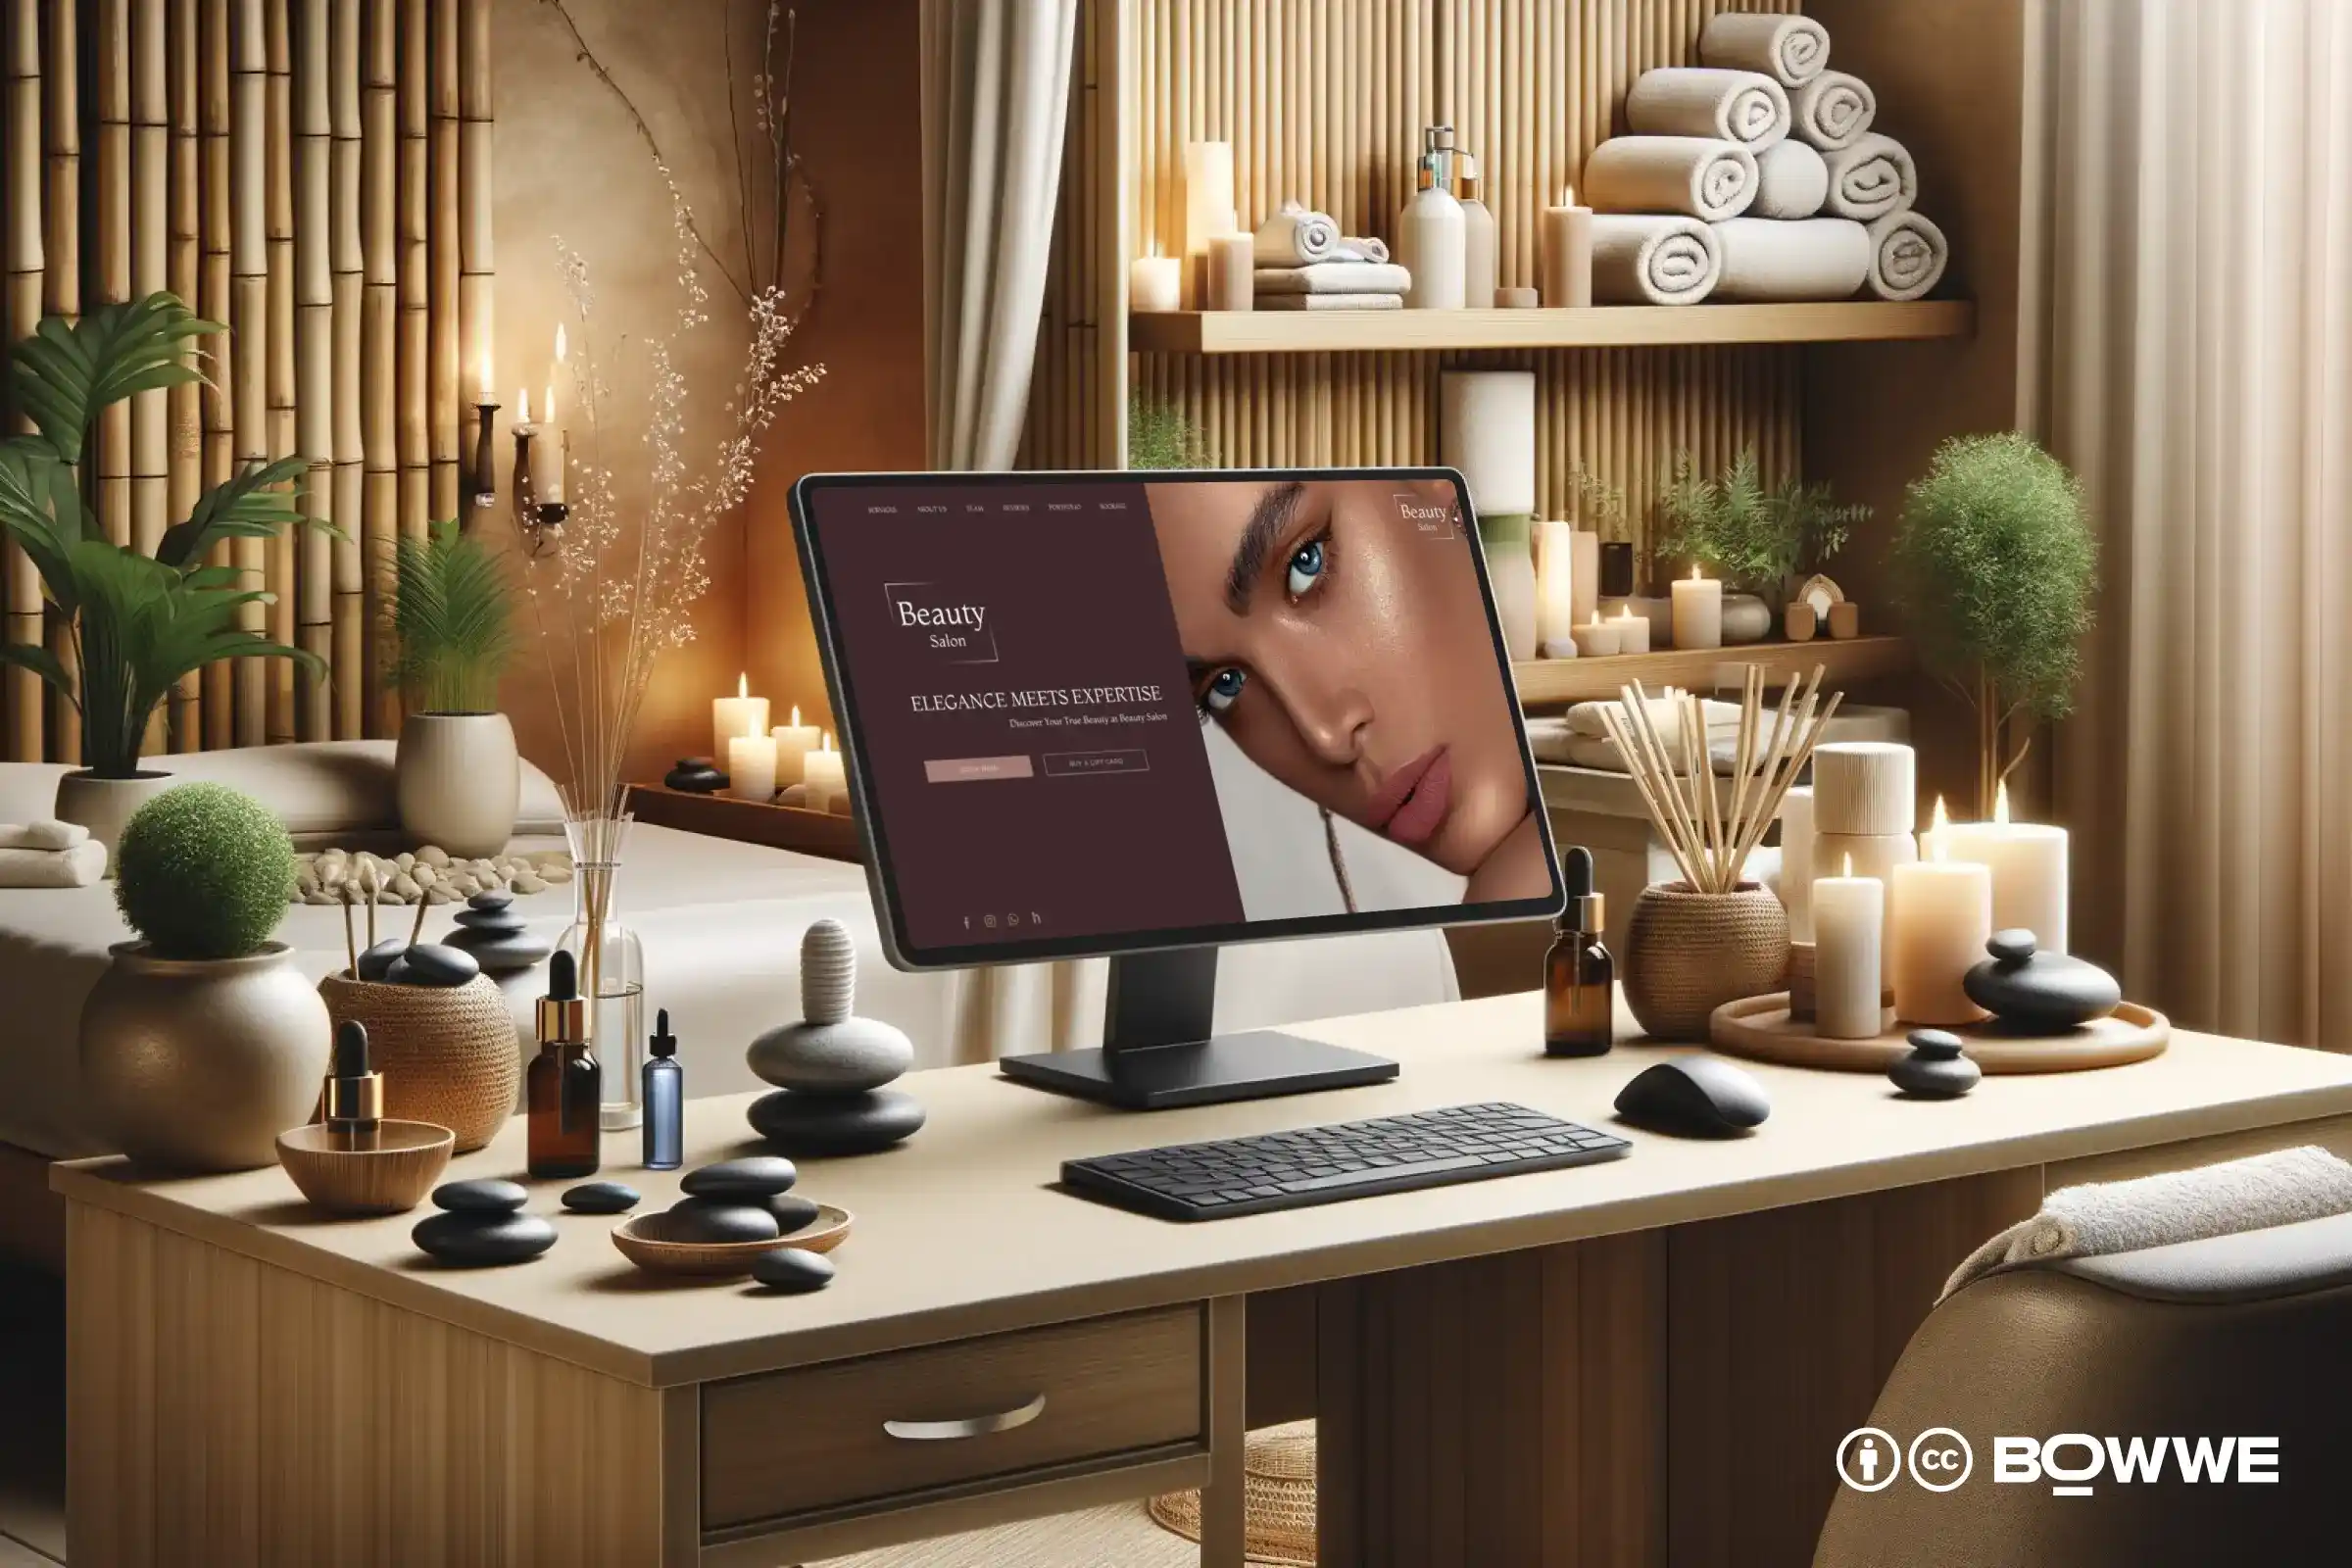 كمبيوتر محمول يقف على المكتب مع ظهور قالب موقع ويب أنيق لصالونات التجميل على الشاشة